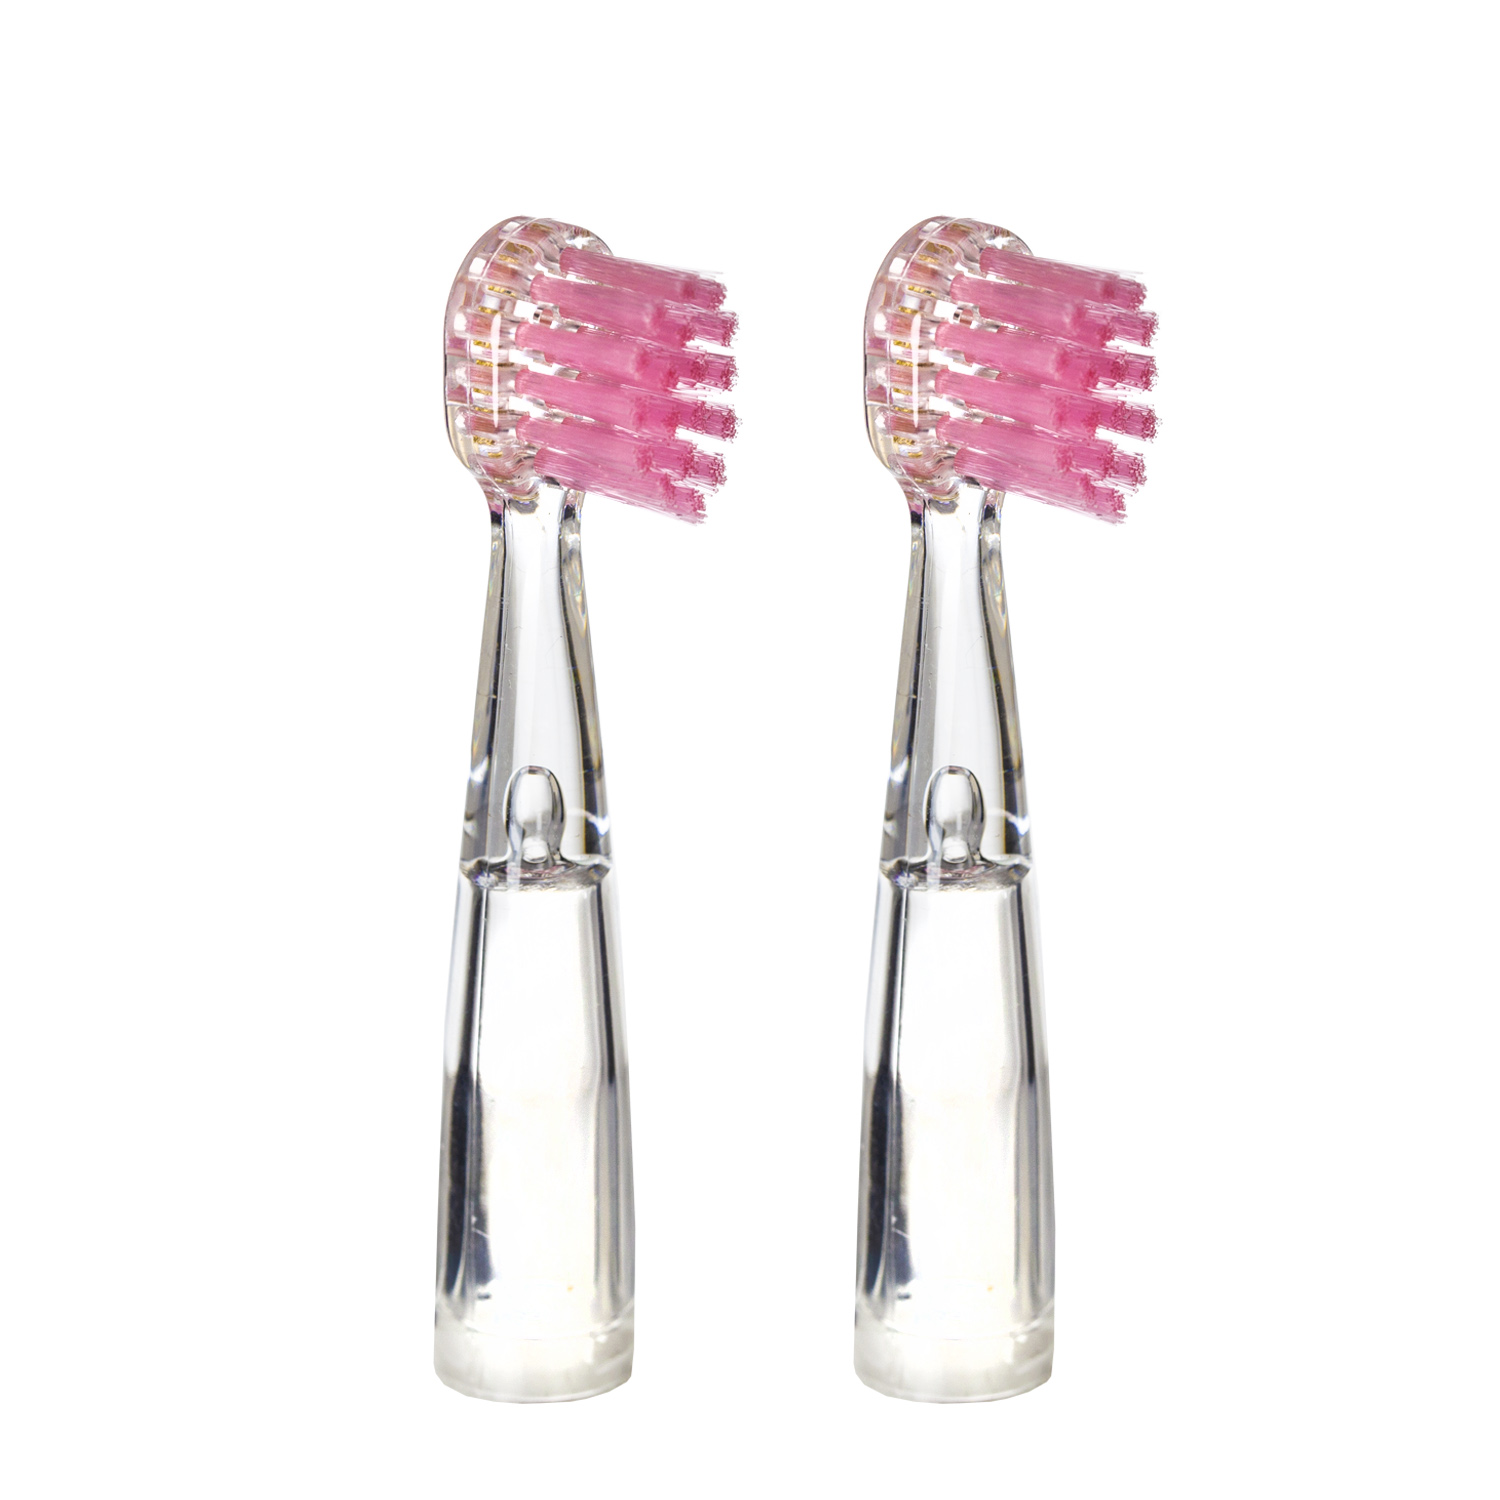 Насадка для детской электрической зубной щетки Revyline RL 025, розовая, 2 шт., 6171 насадка revyline rl 050 kids белая оранжевая 2шт